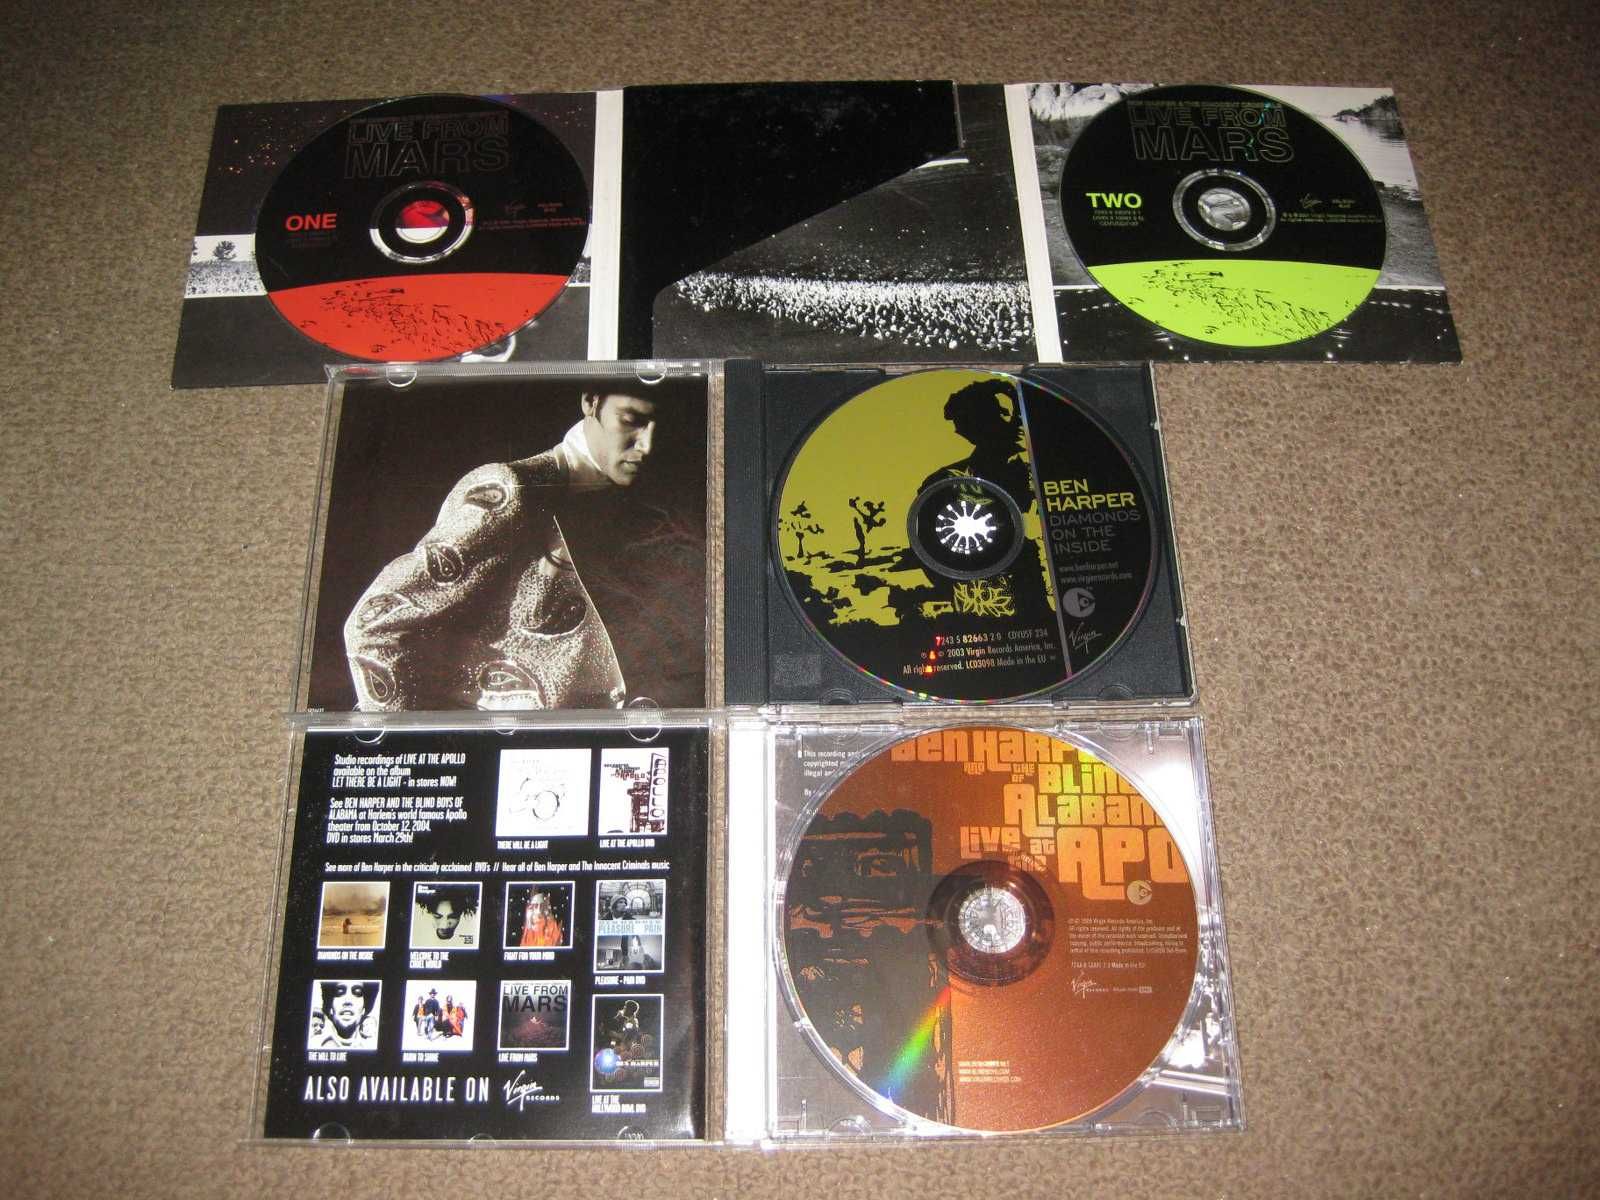 6 CDs do "Ben Harper" Portes Grátis!